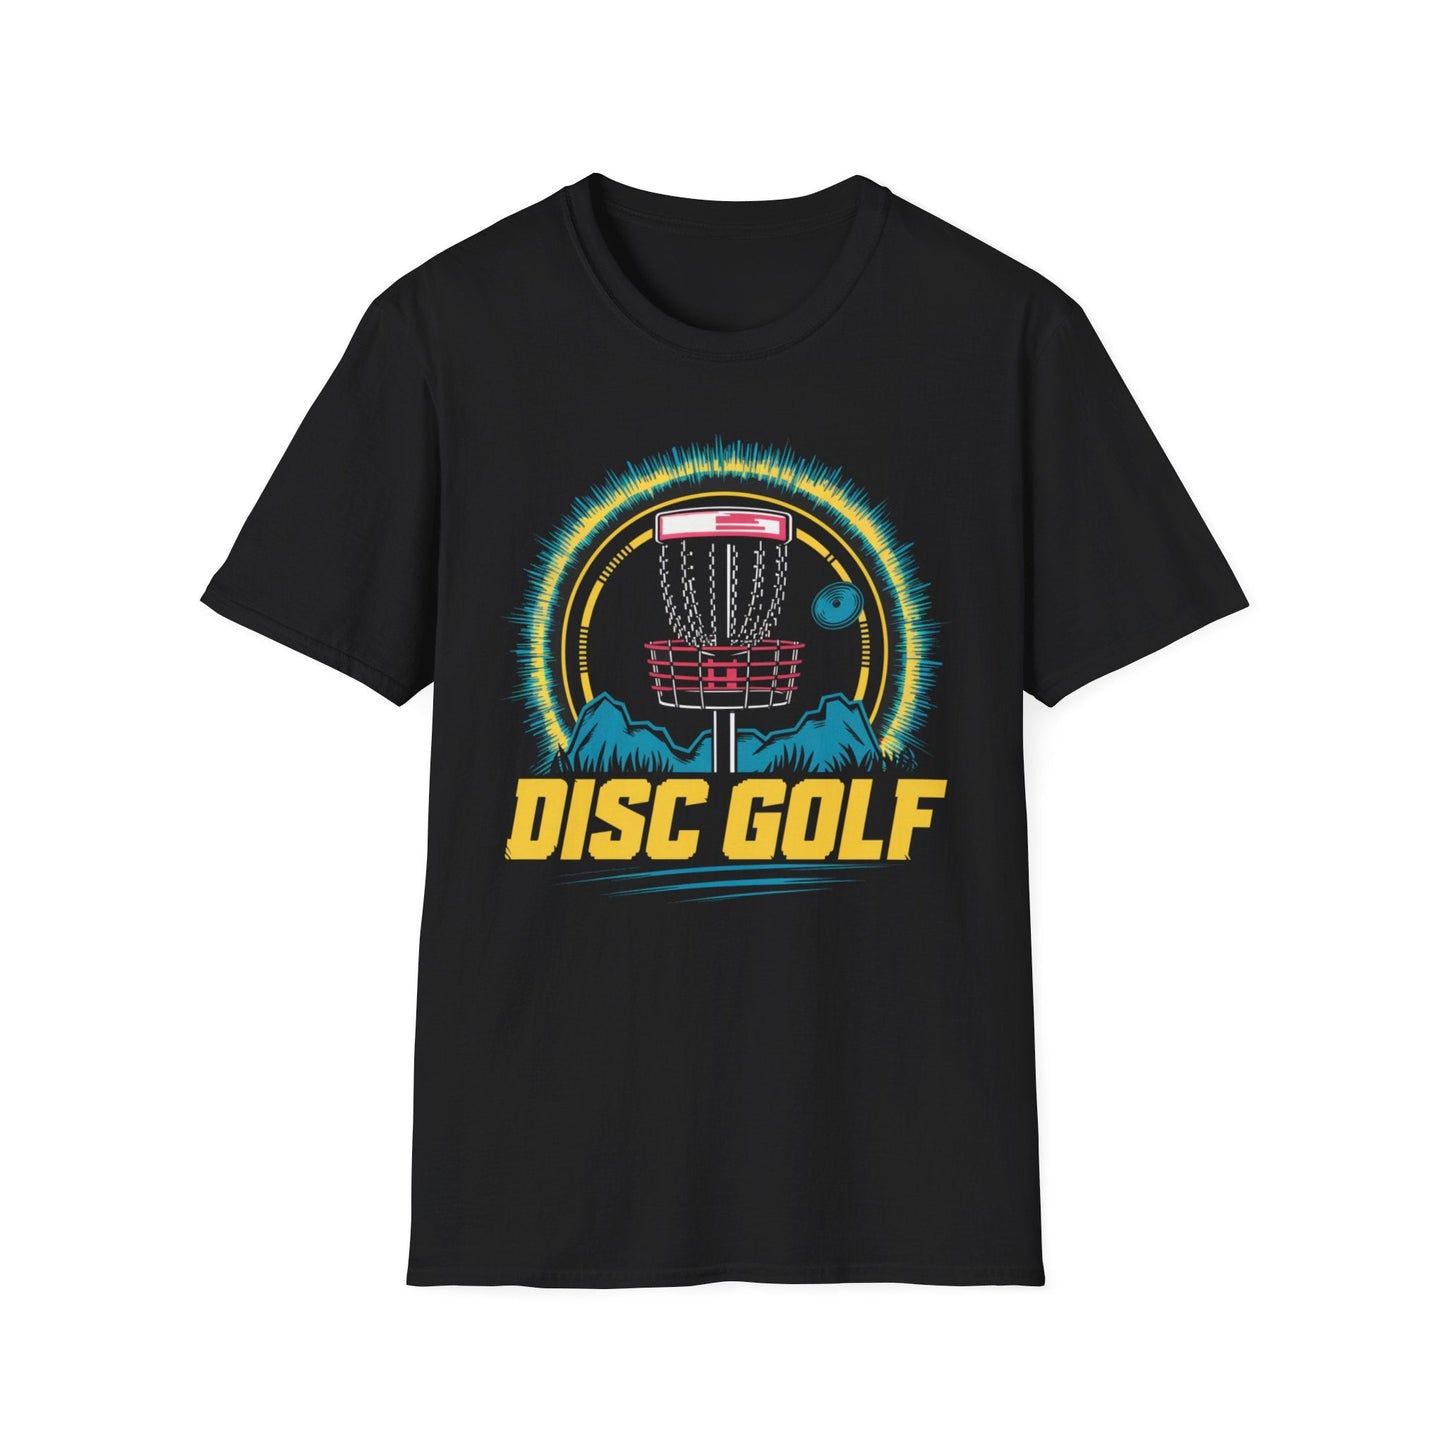 Fun Disc Golf Shirt - Disc Golf 80s Style Shirt - Unisex Jersey Short Sleeve Tee - Quirky Goodies